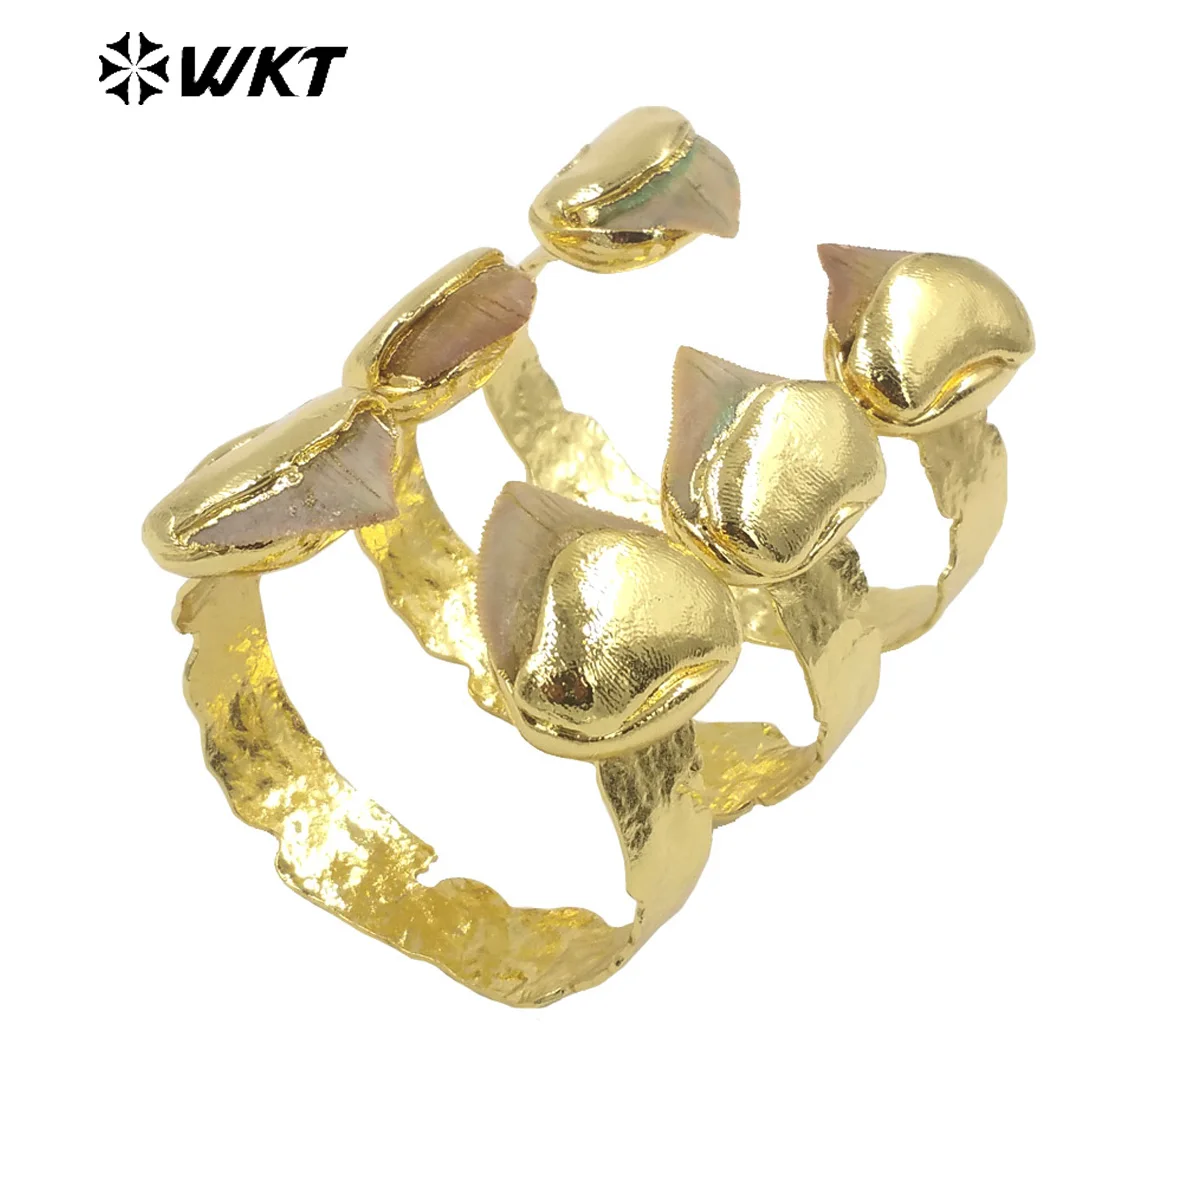 WT-B635 Удивительный WKT Эксклюзивный образец зубного браслета 18k с покрытием из настоящего золота INS, женский браслет в модном стиле, регулируемый Изображение 1